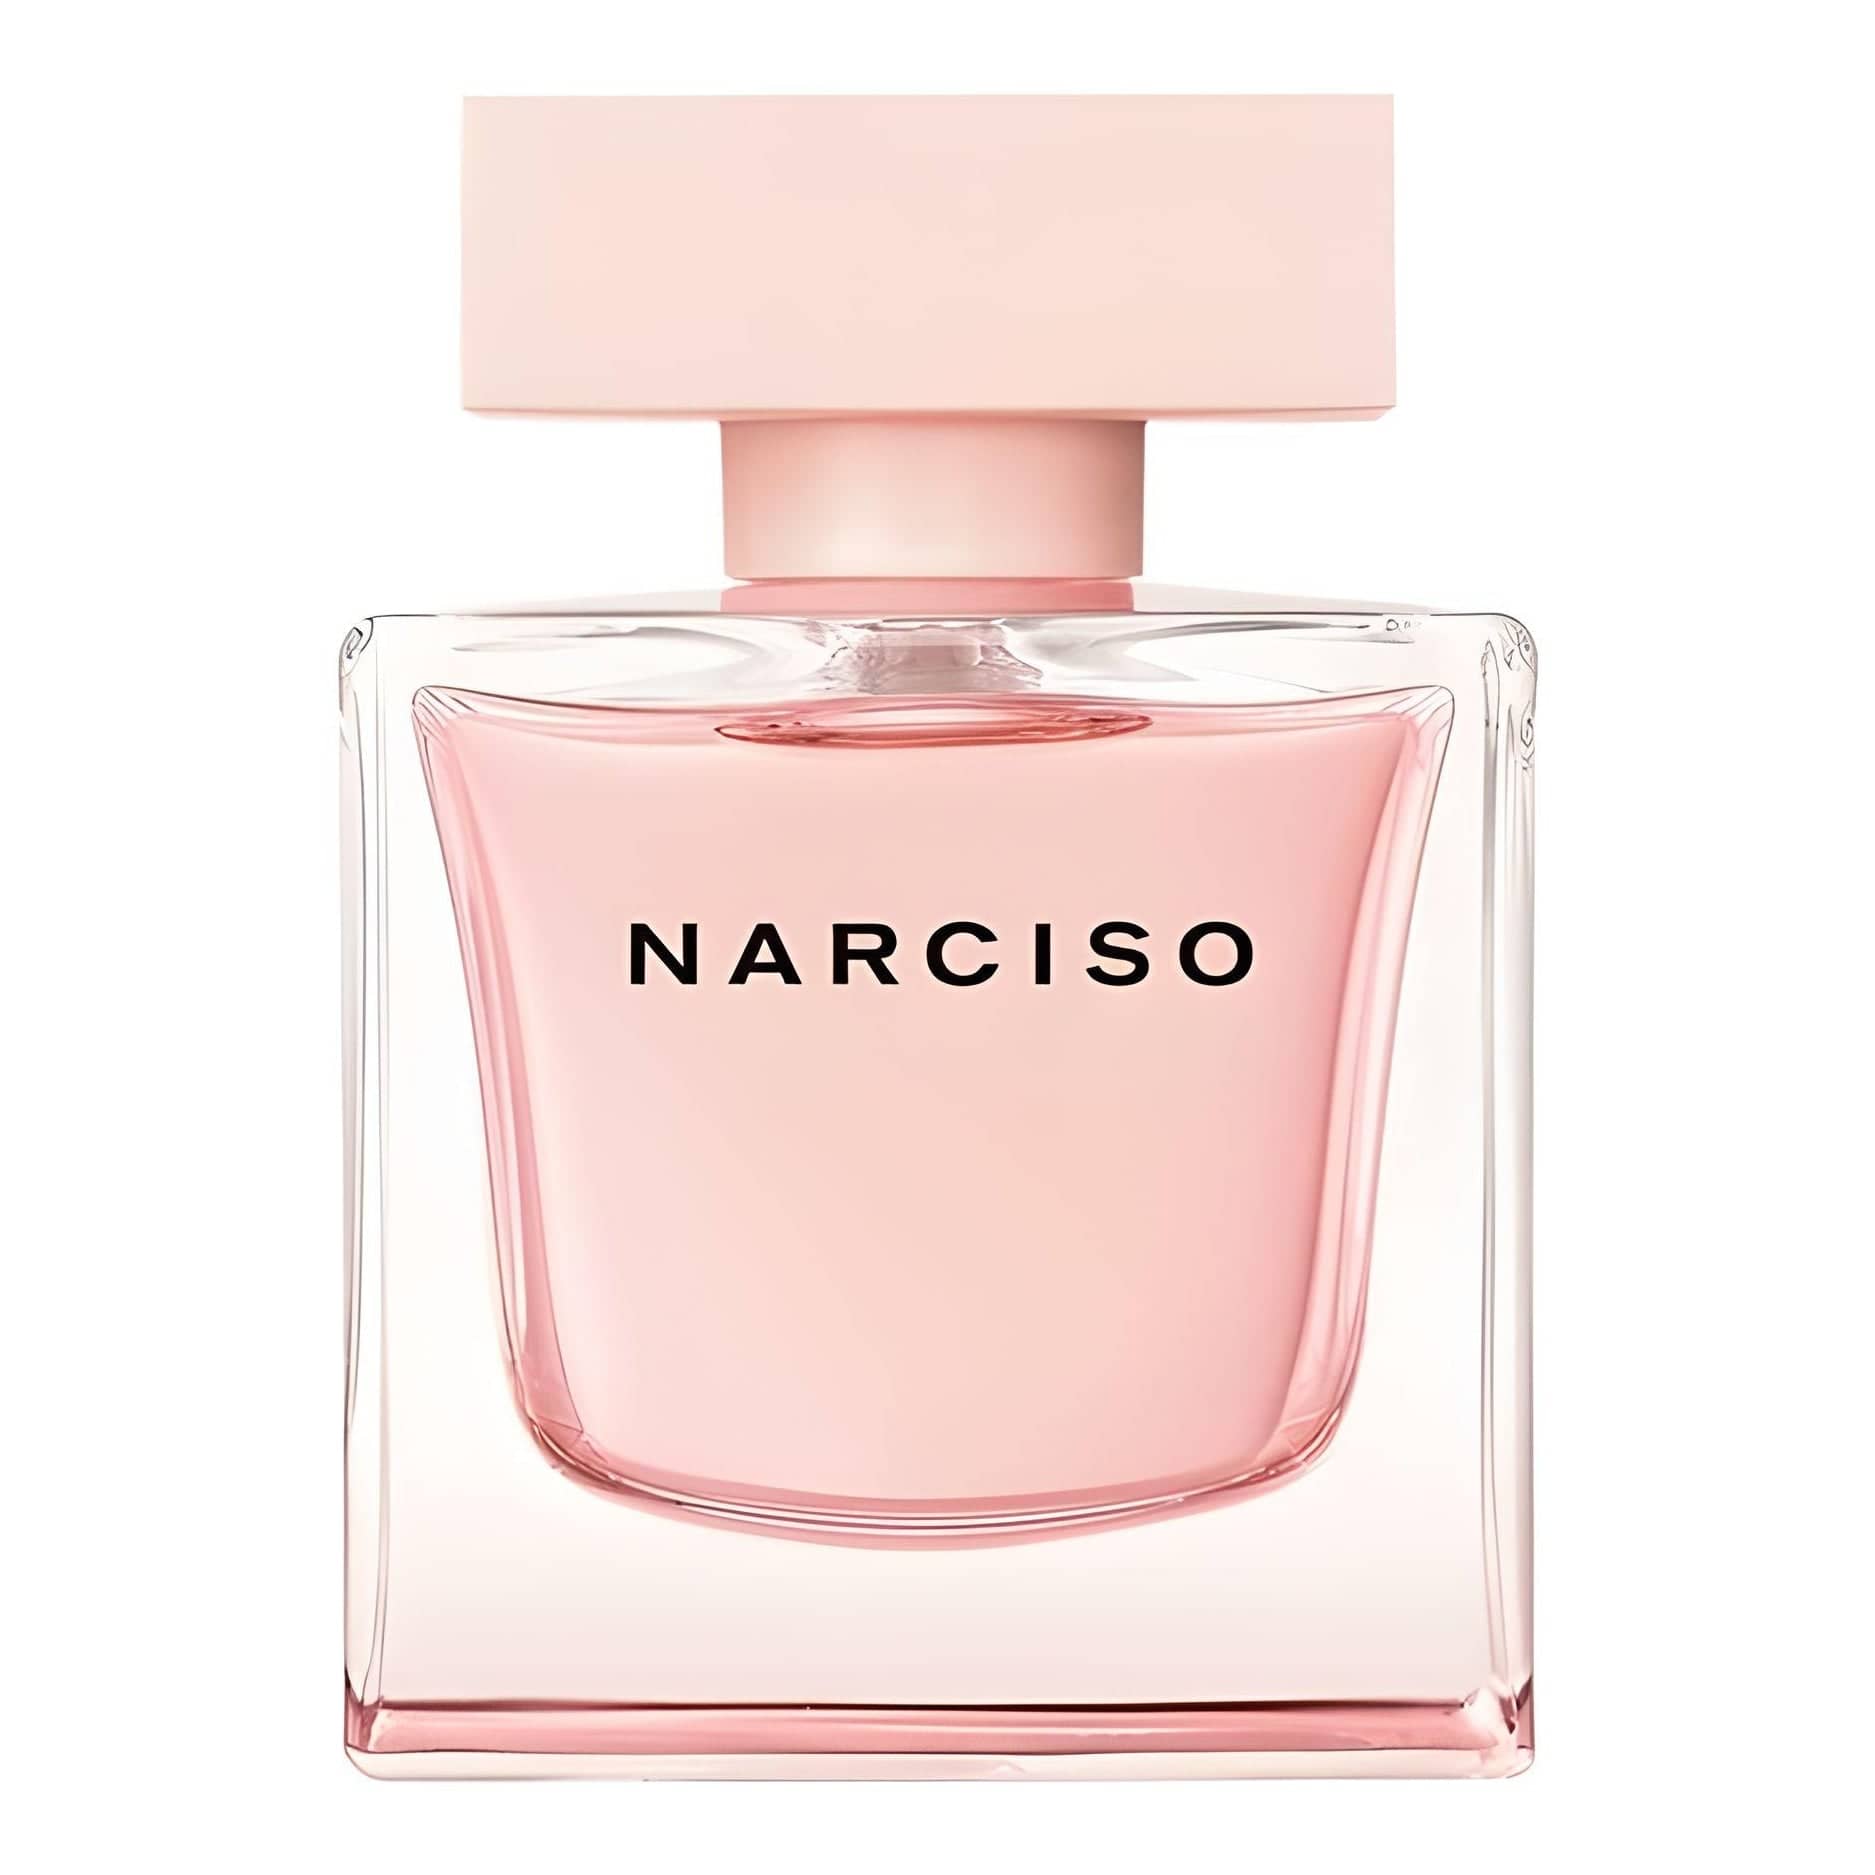 NARCISO CRISTAL Eau de Parfum